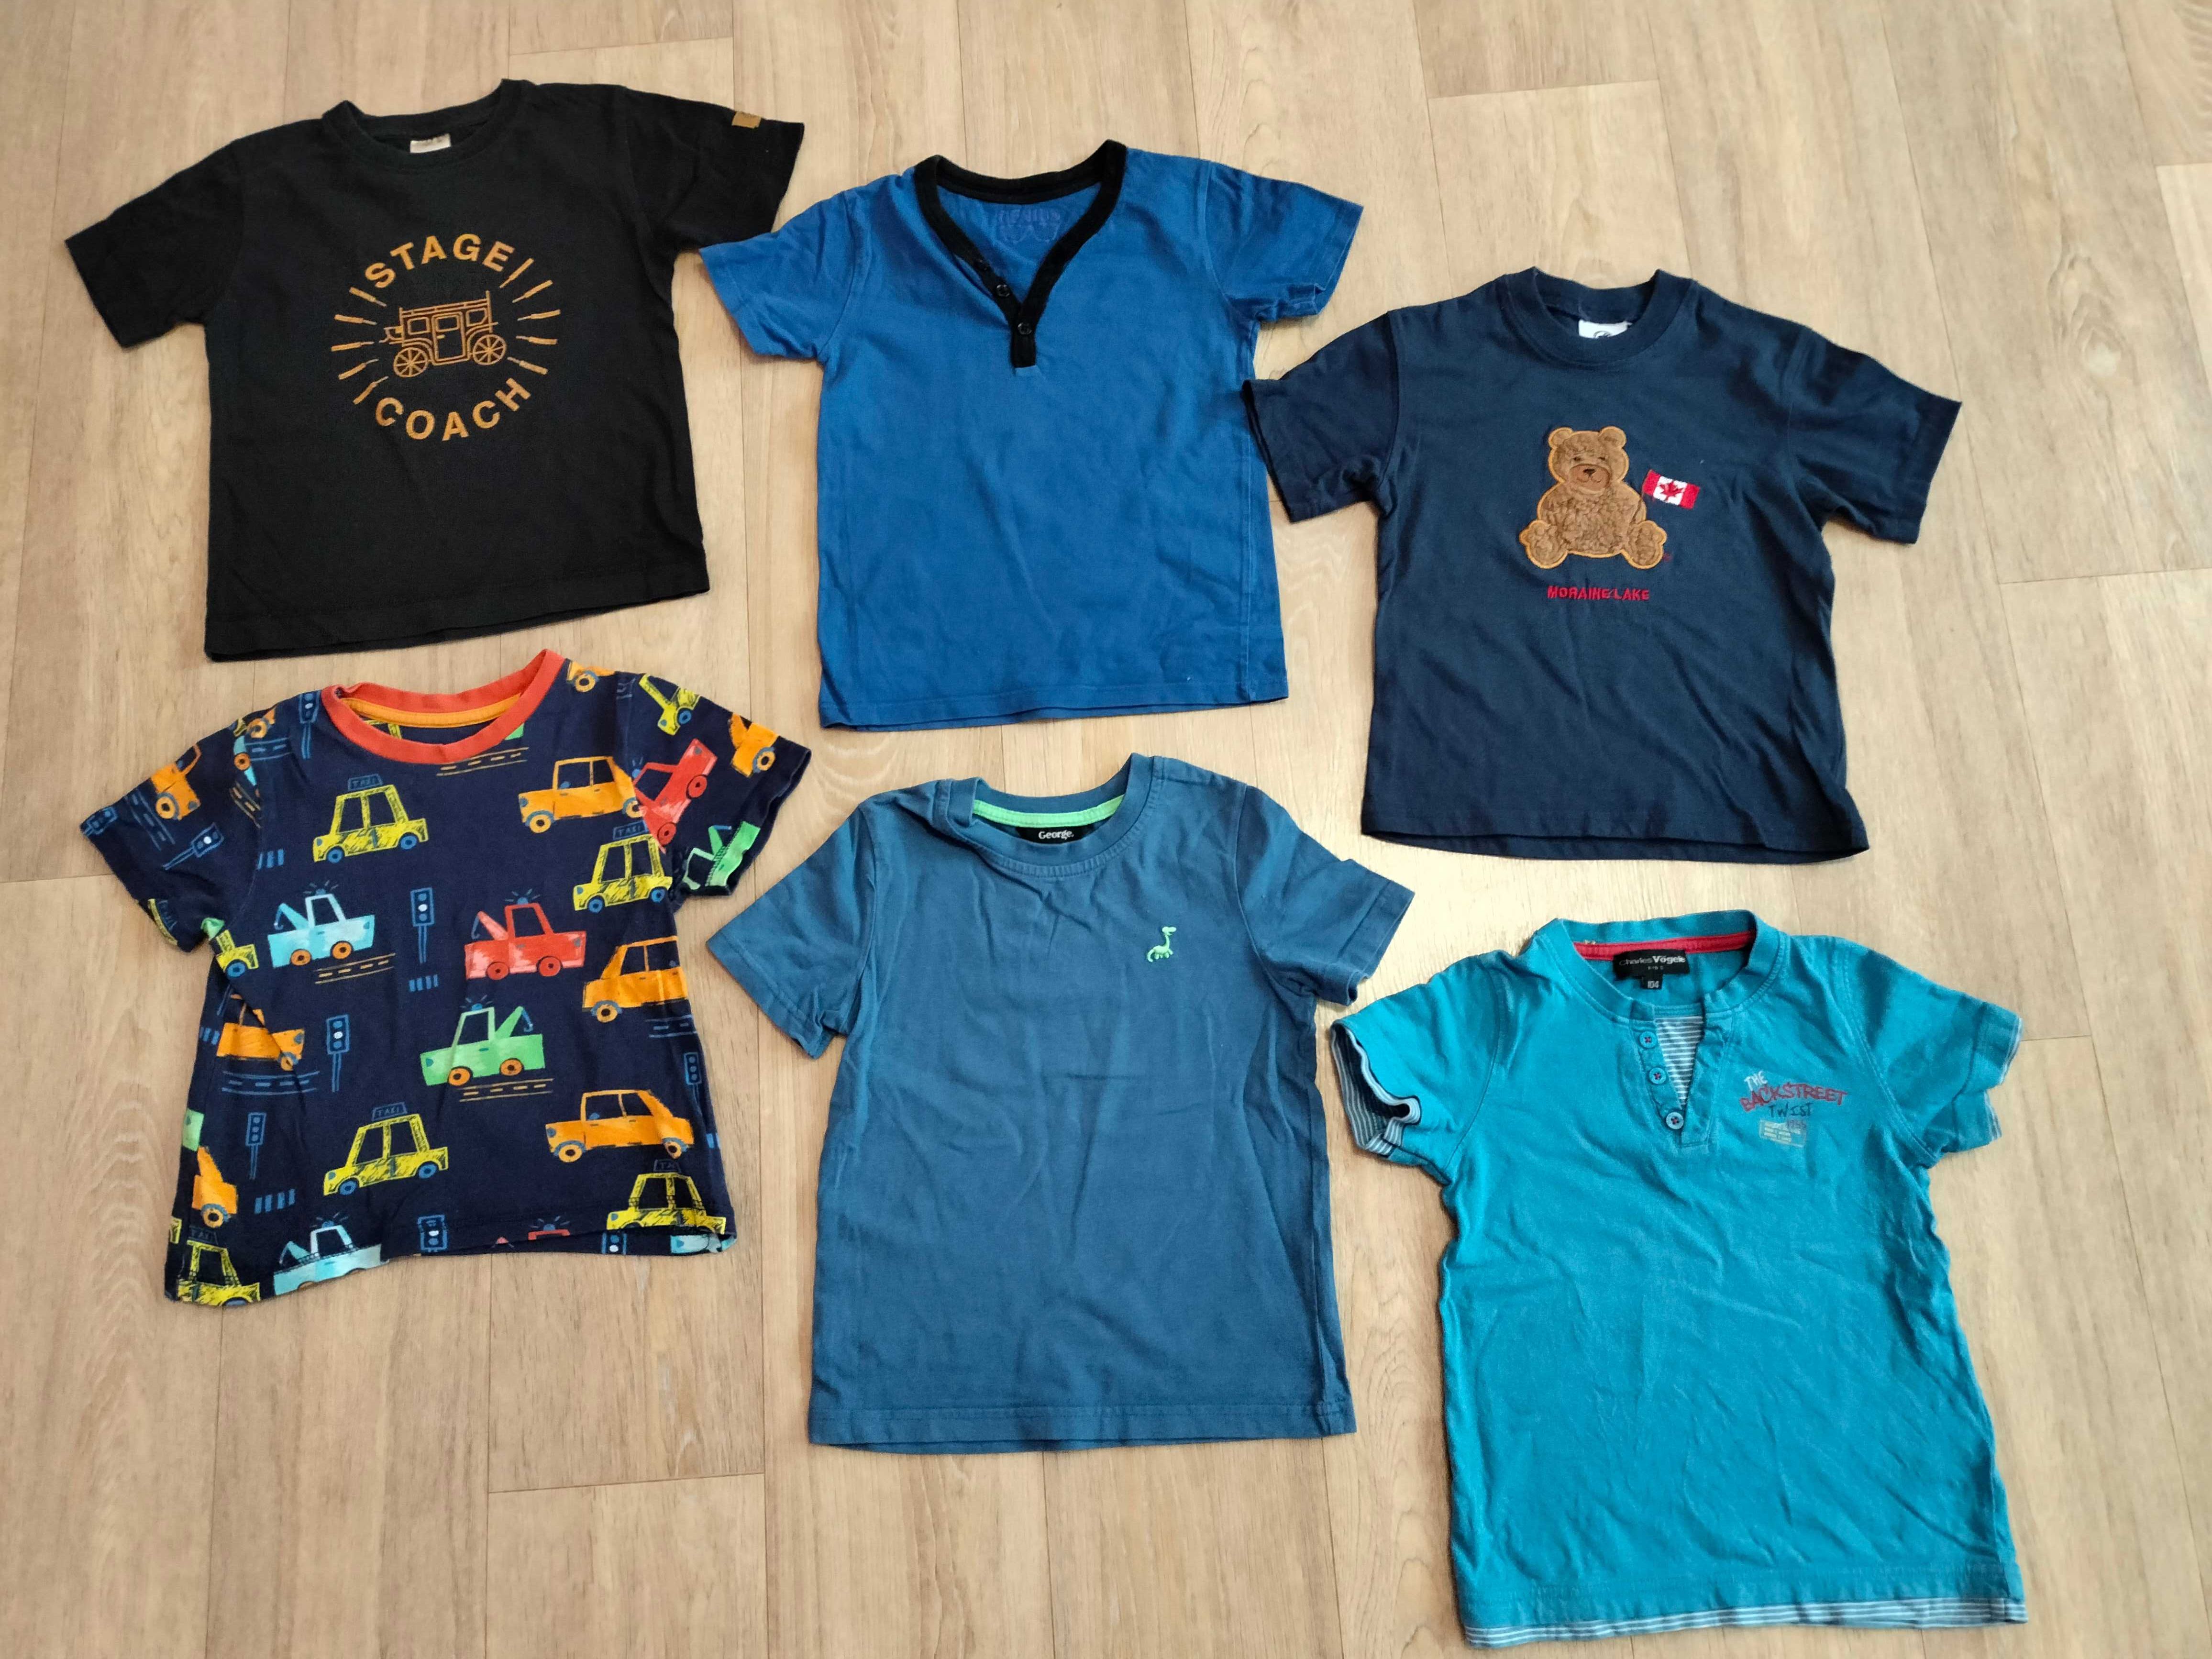 Футболка набір, для мальчика, набор футболок рост 98-104, 3-4 роки